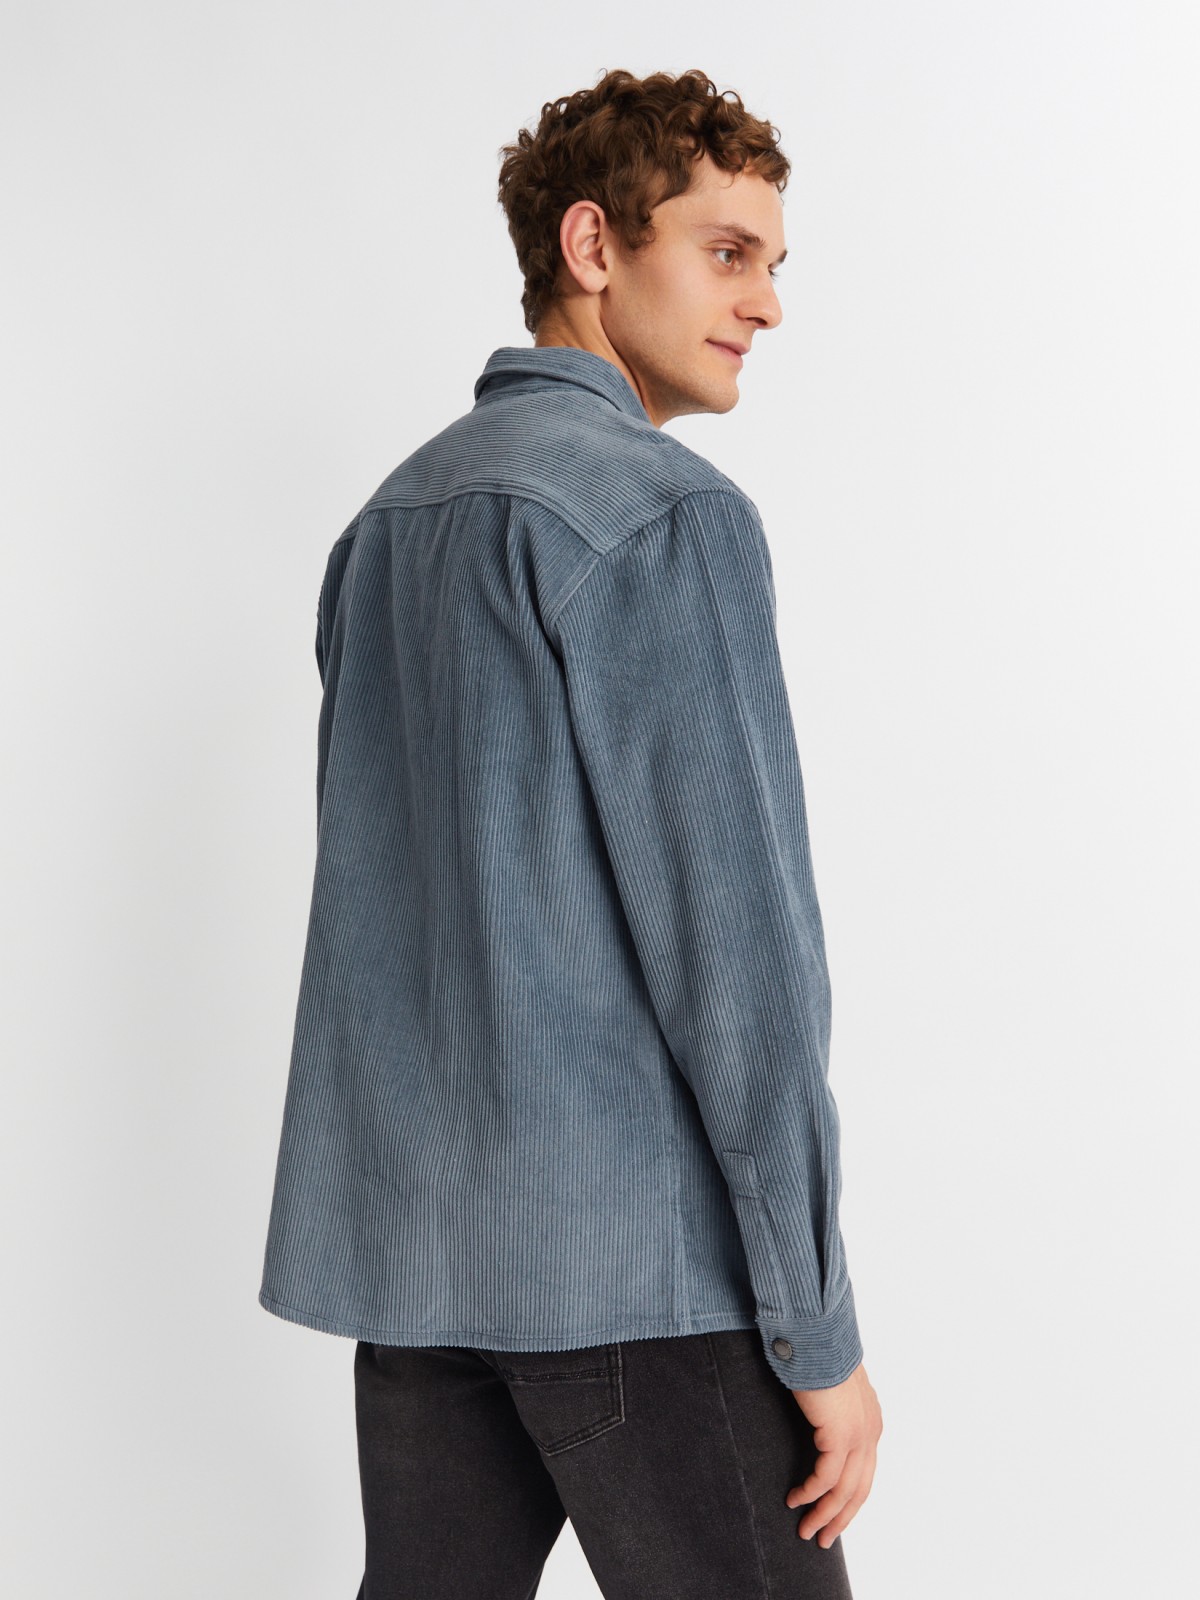 Вельветовая куртка-рубашка из хлопка с длинным рукавом zolla 21342214R041, цвет светло-голубой, размер M - фото 6